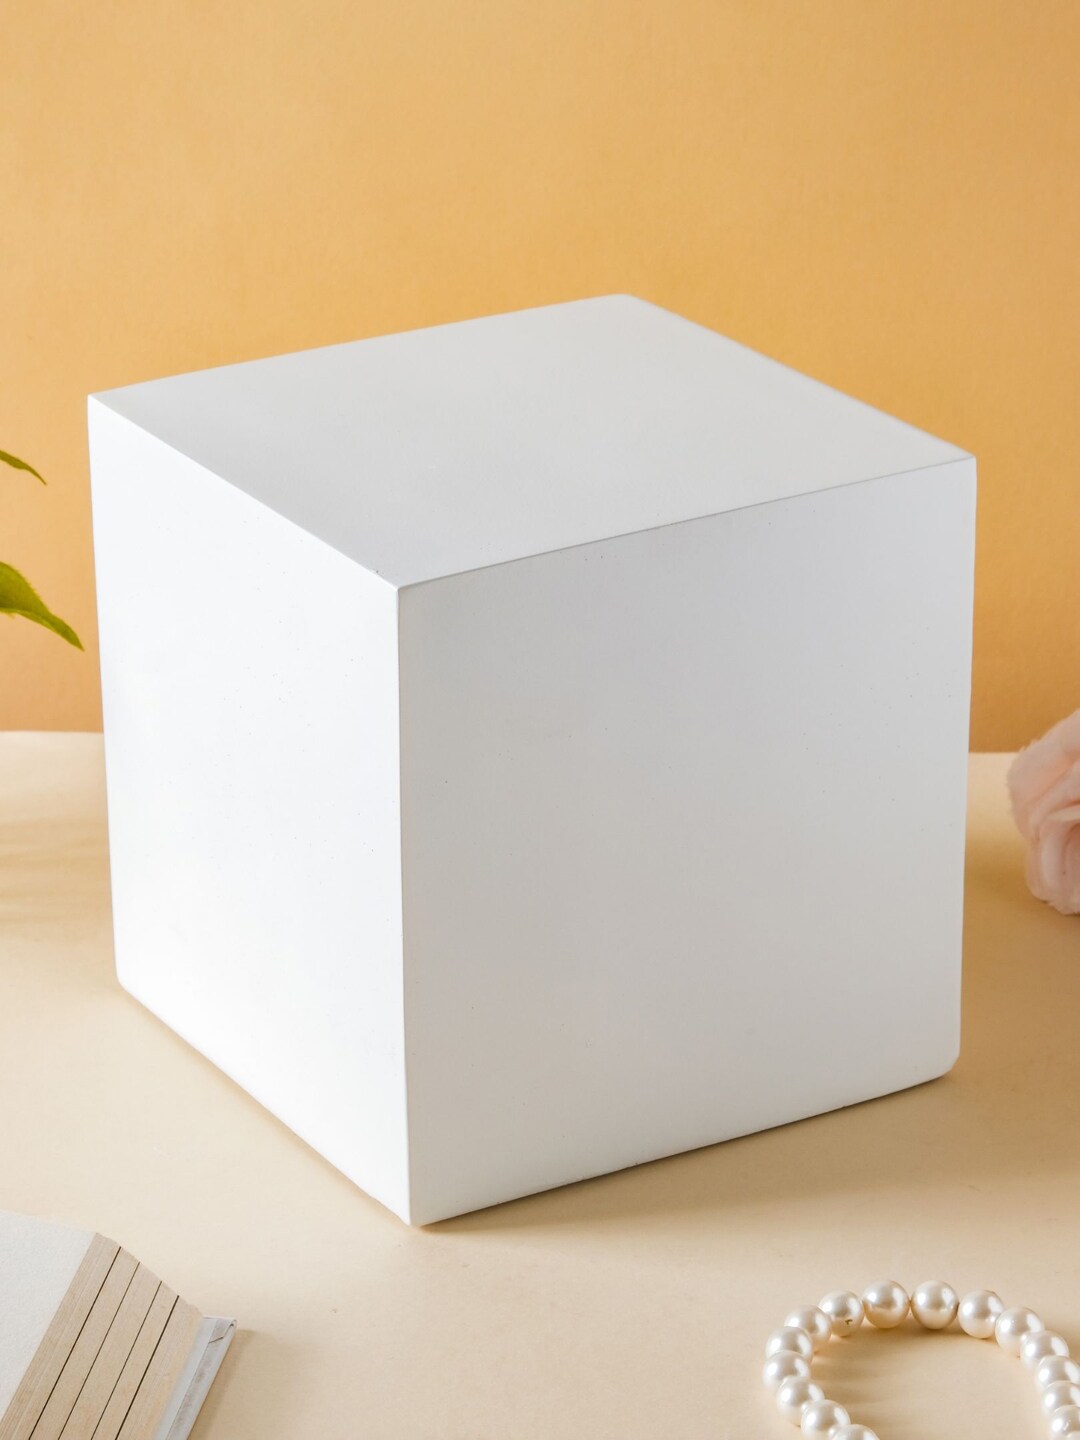 Nestasia White Cube Wooden Showpiece Price in India